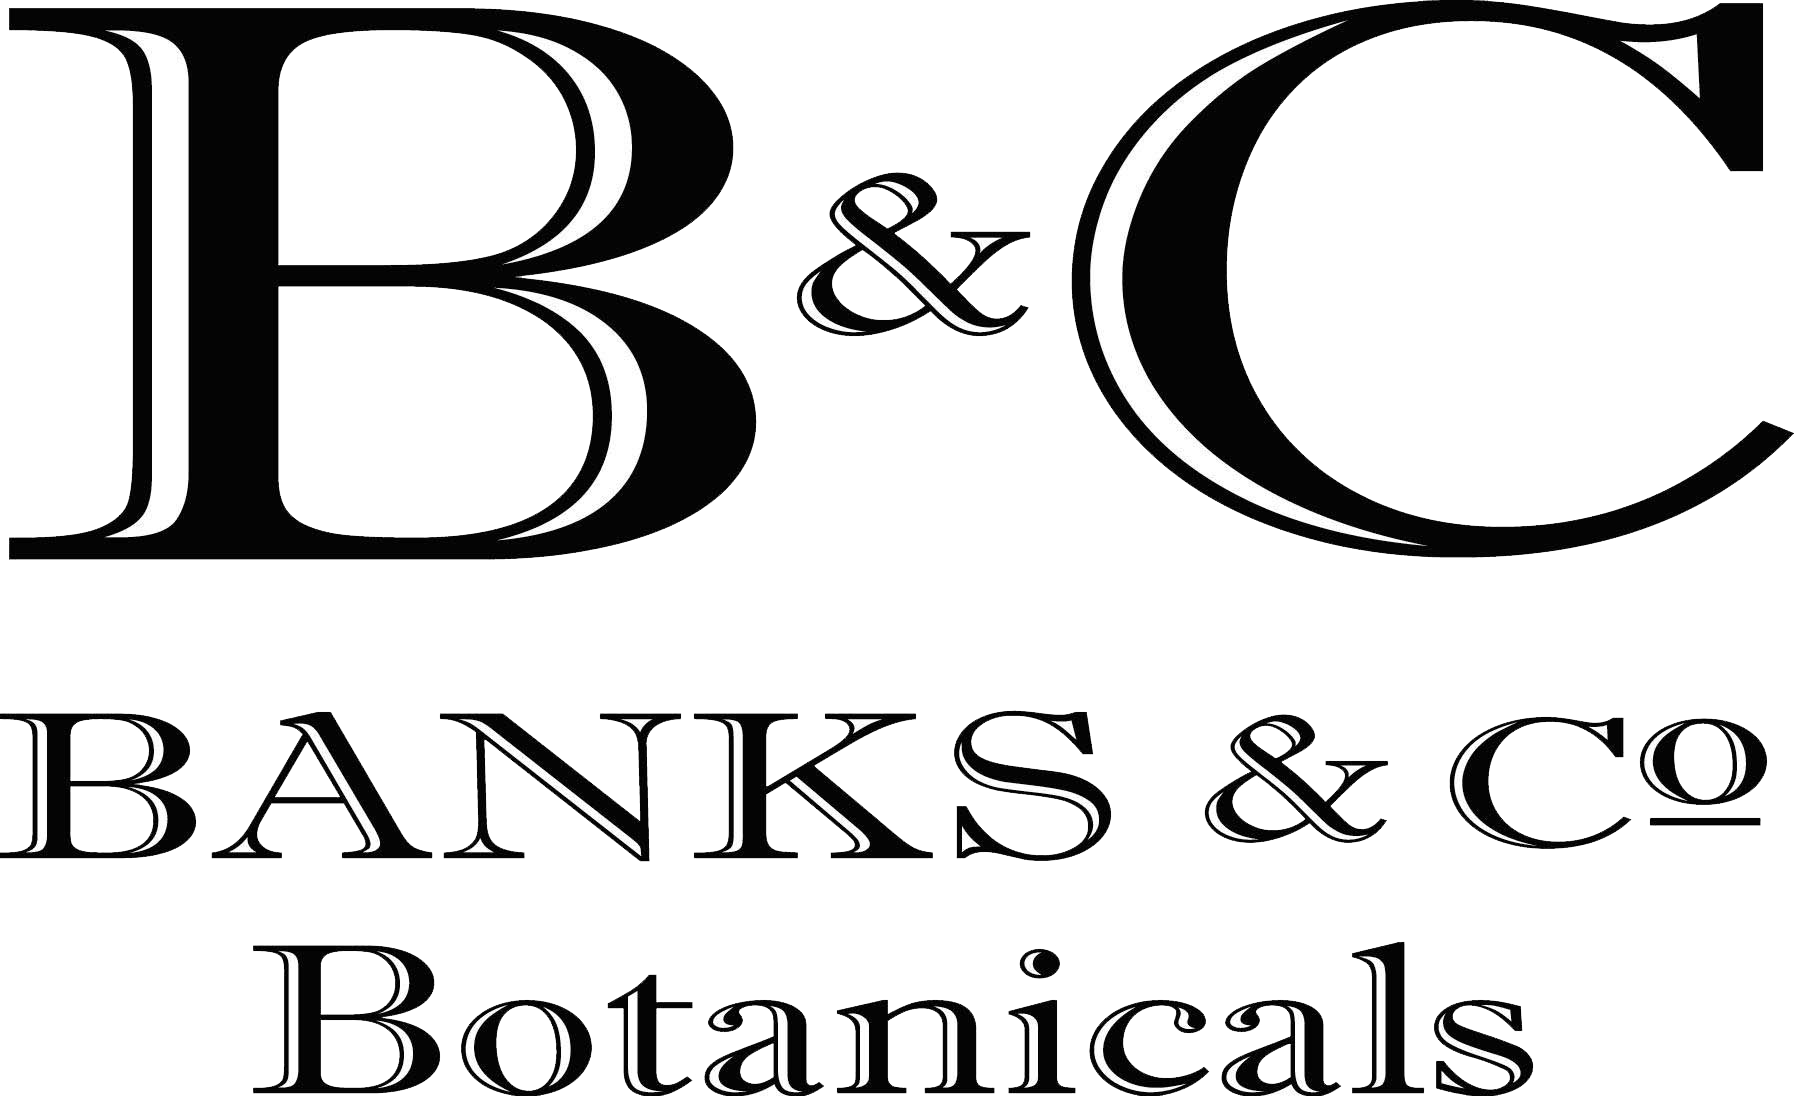 Banks & Co